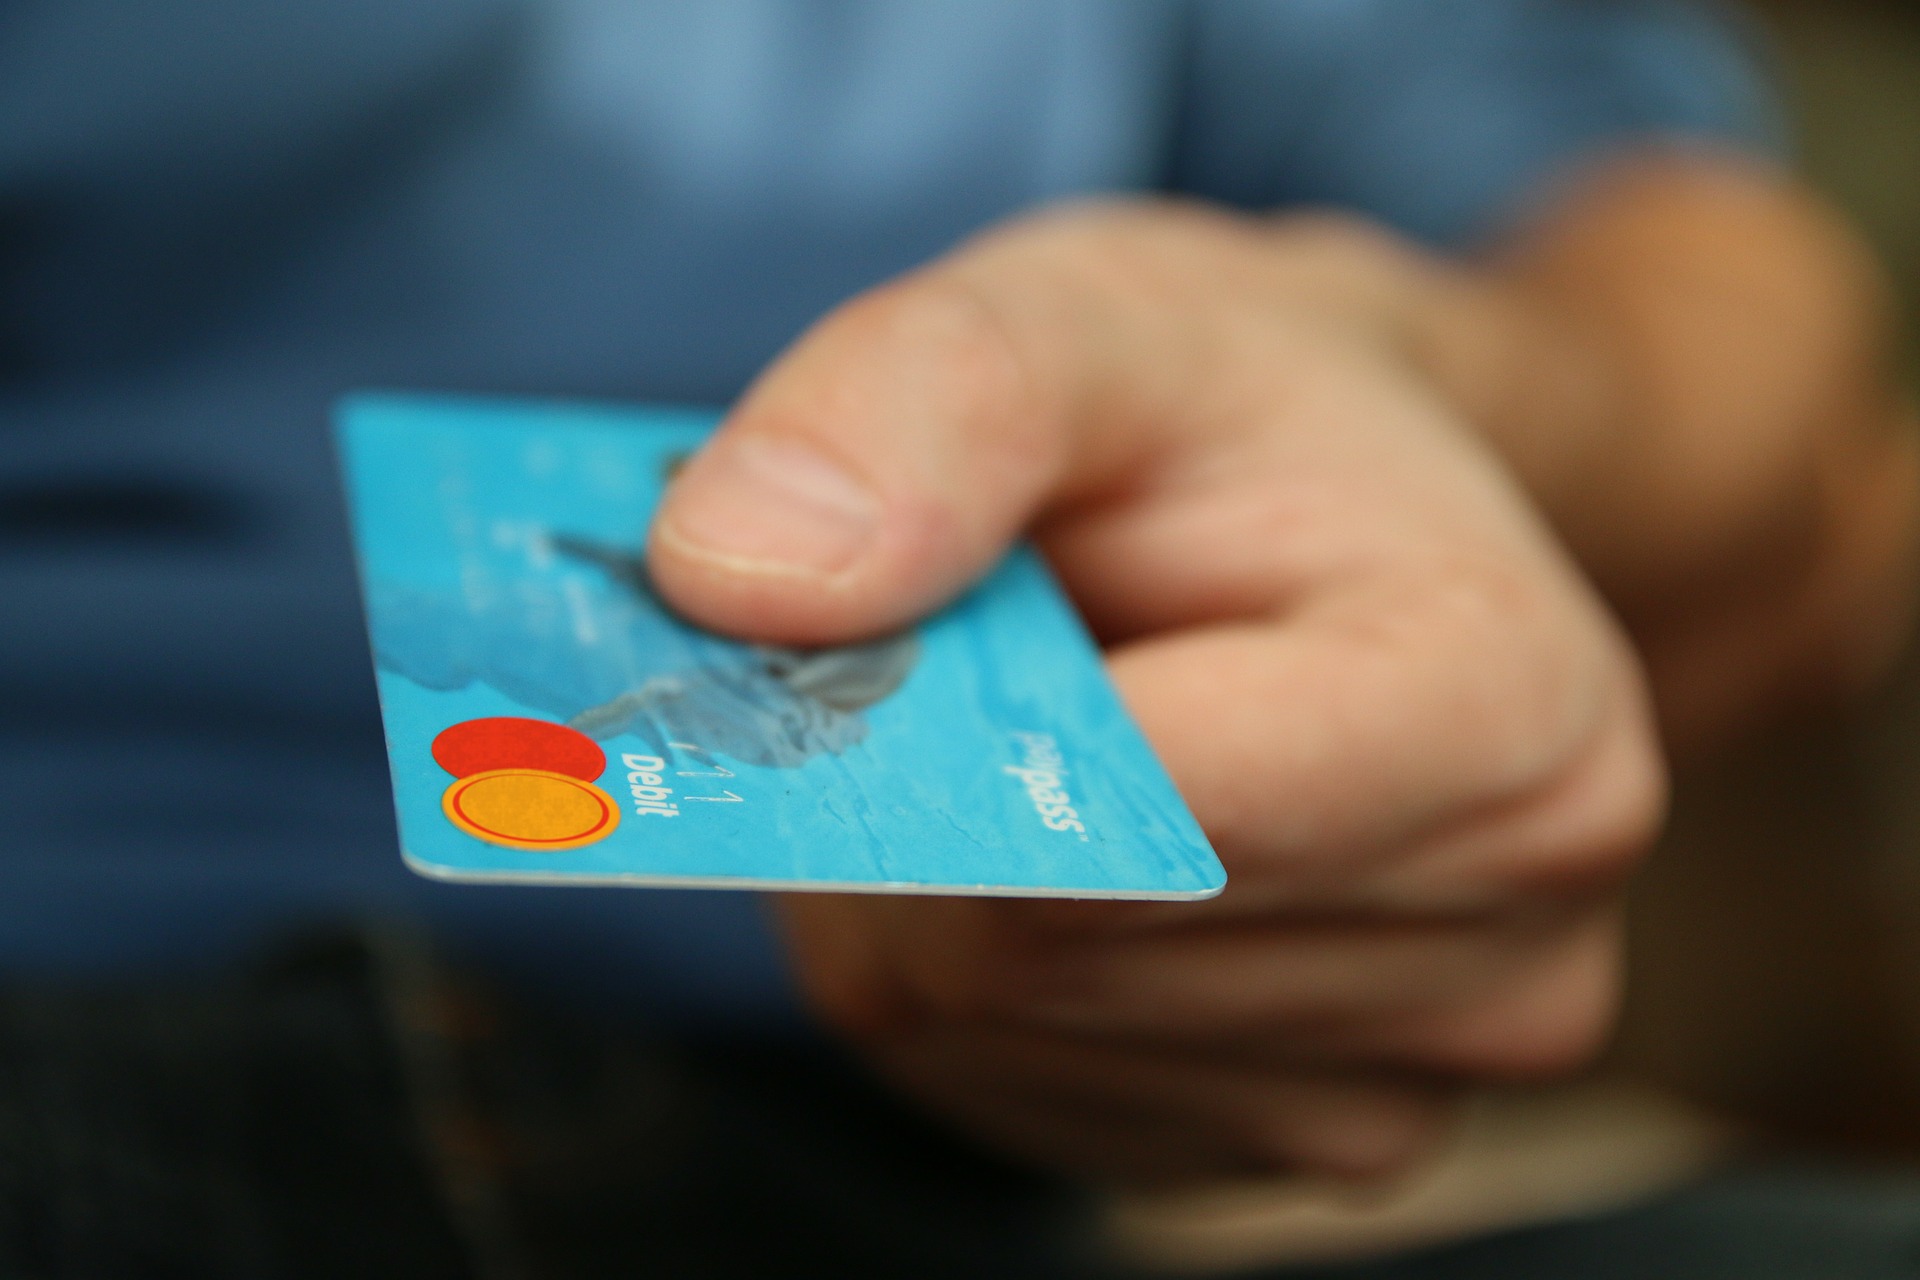 Credit Cards in Czech Republic